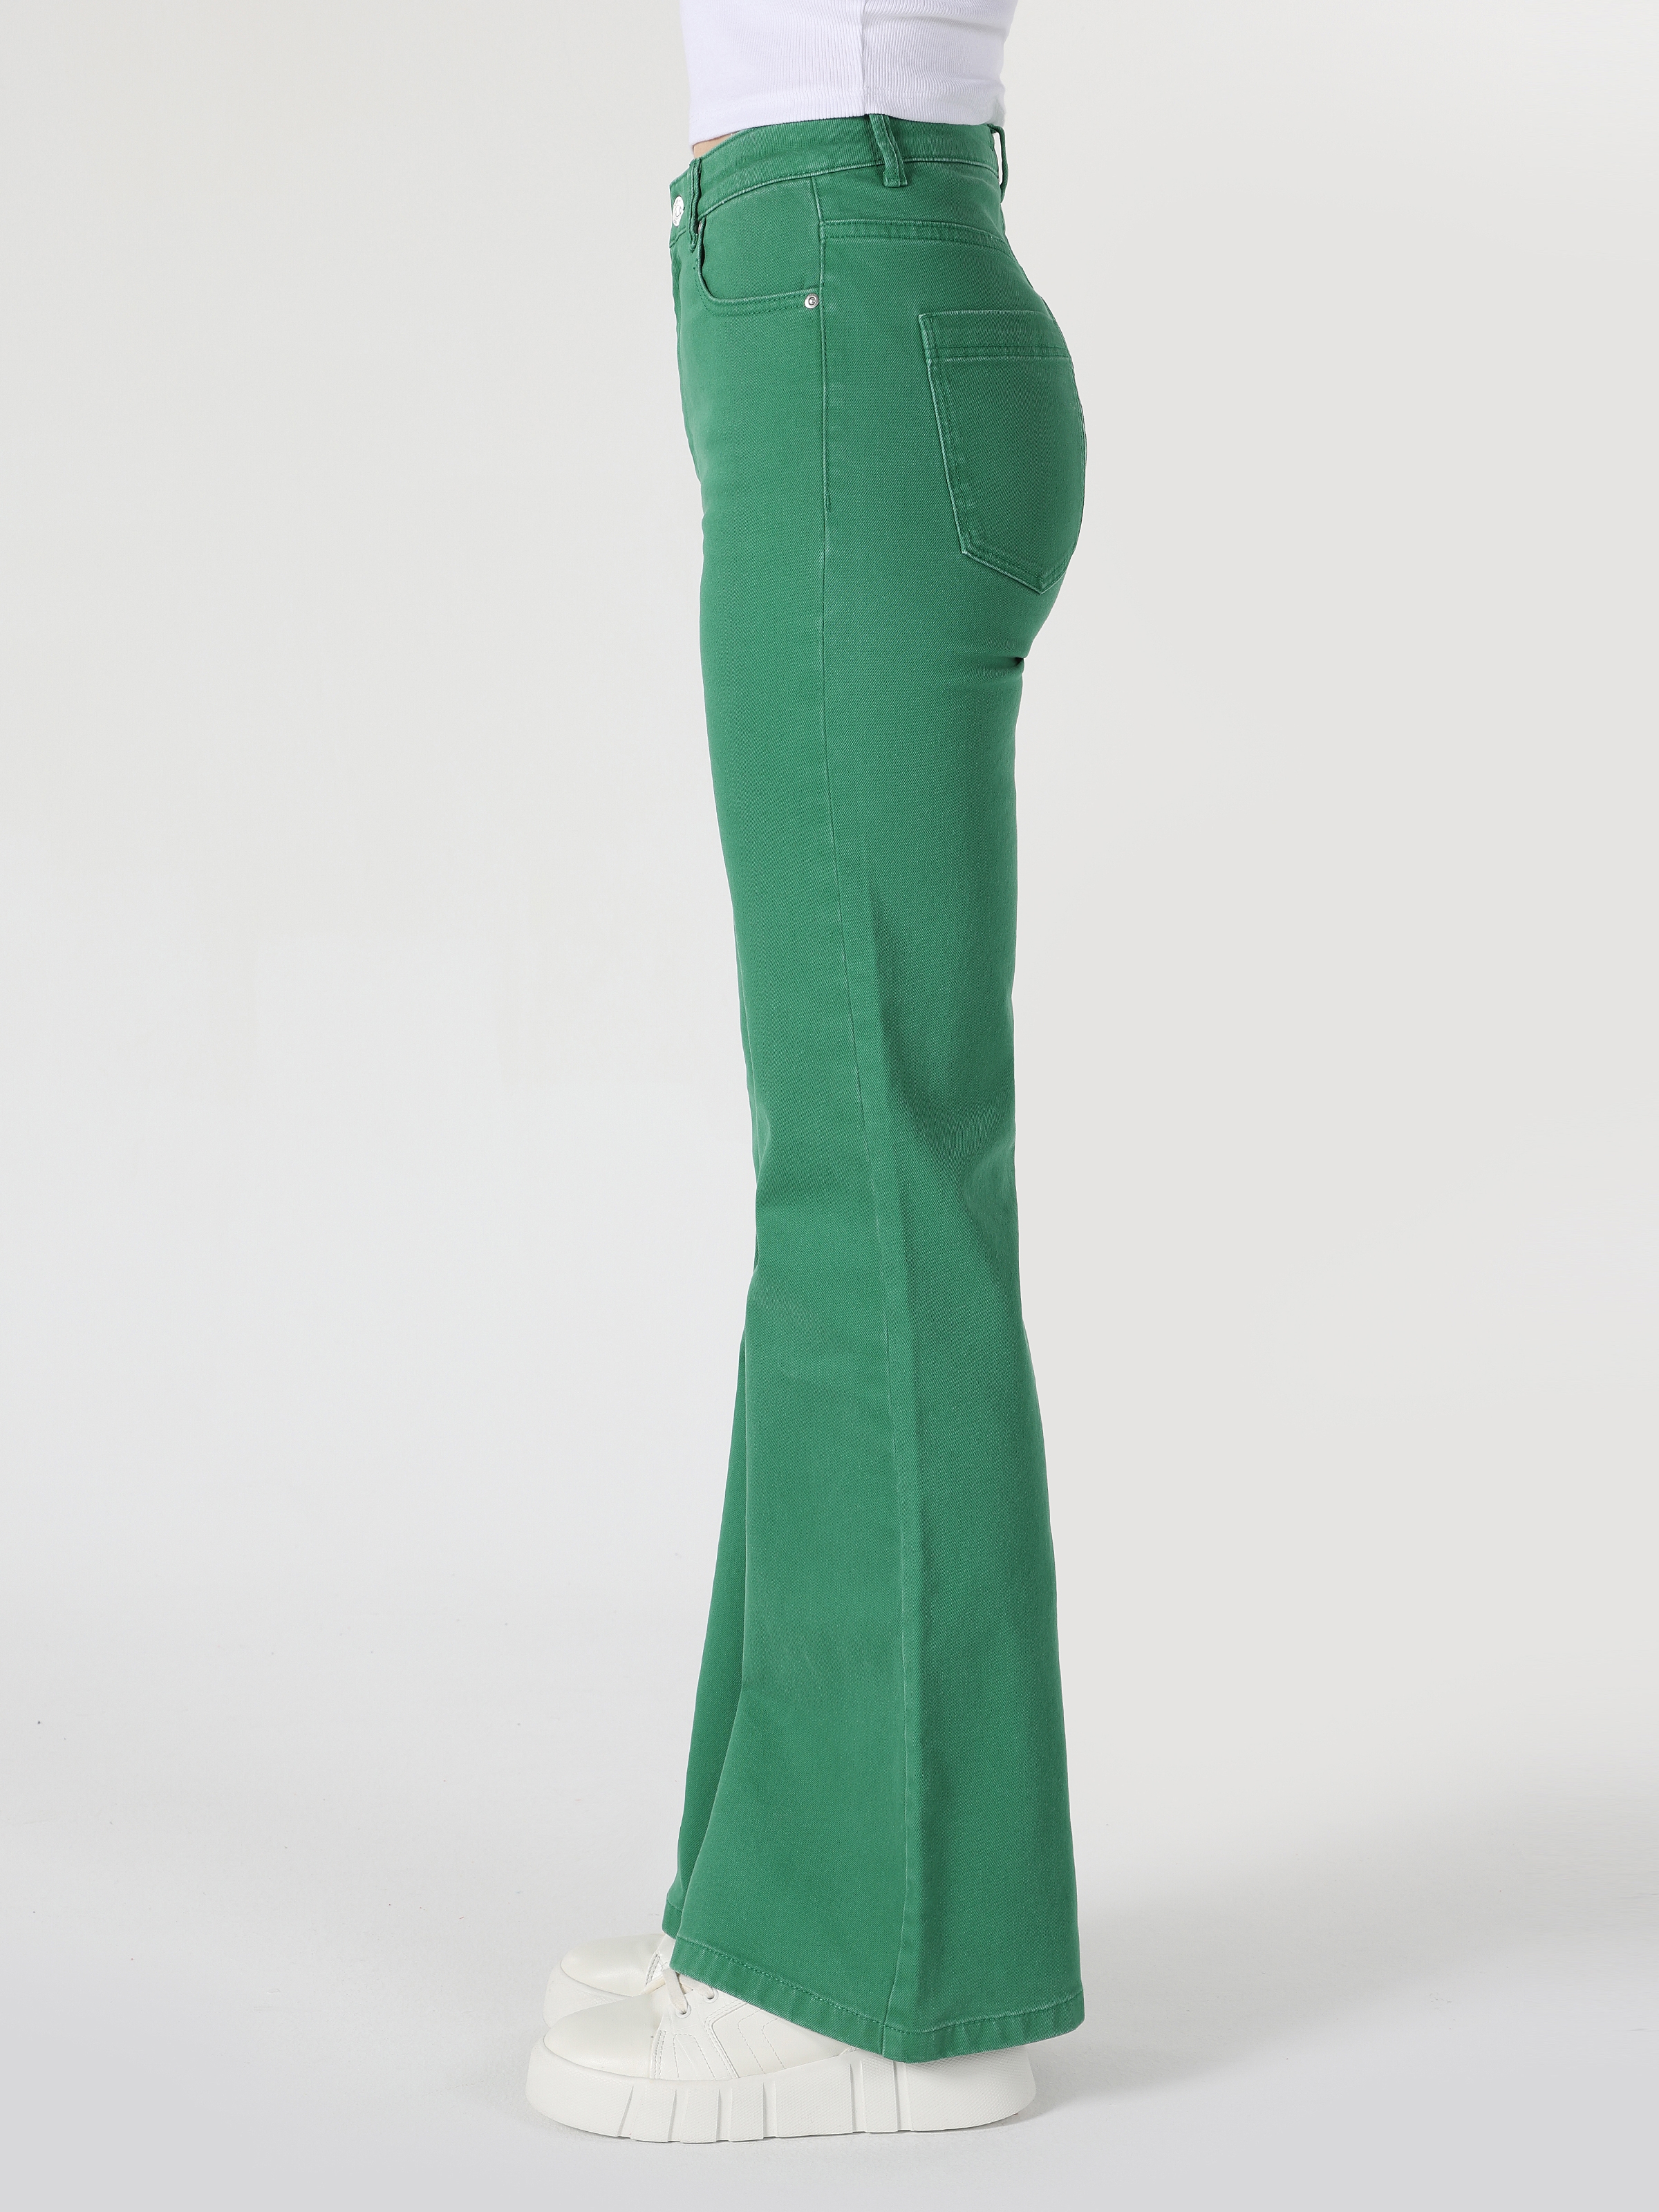 Afișați detalii pentru Pantaloni De Dama Verde Slim Fit 